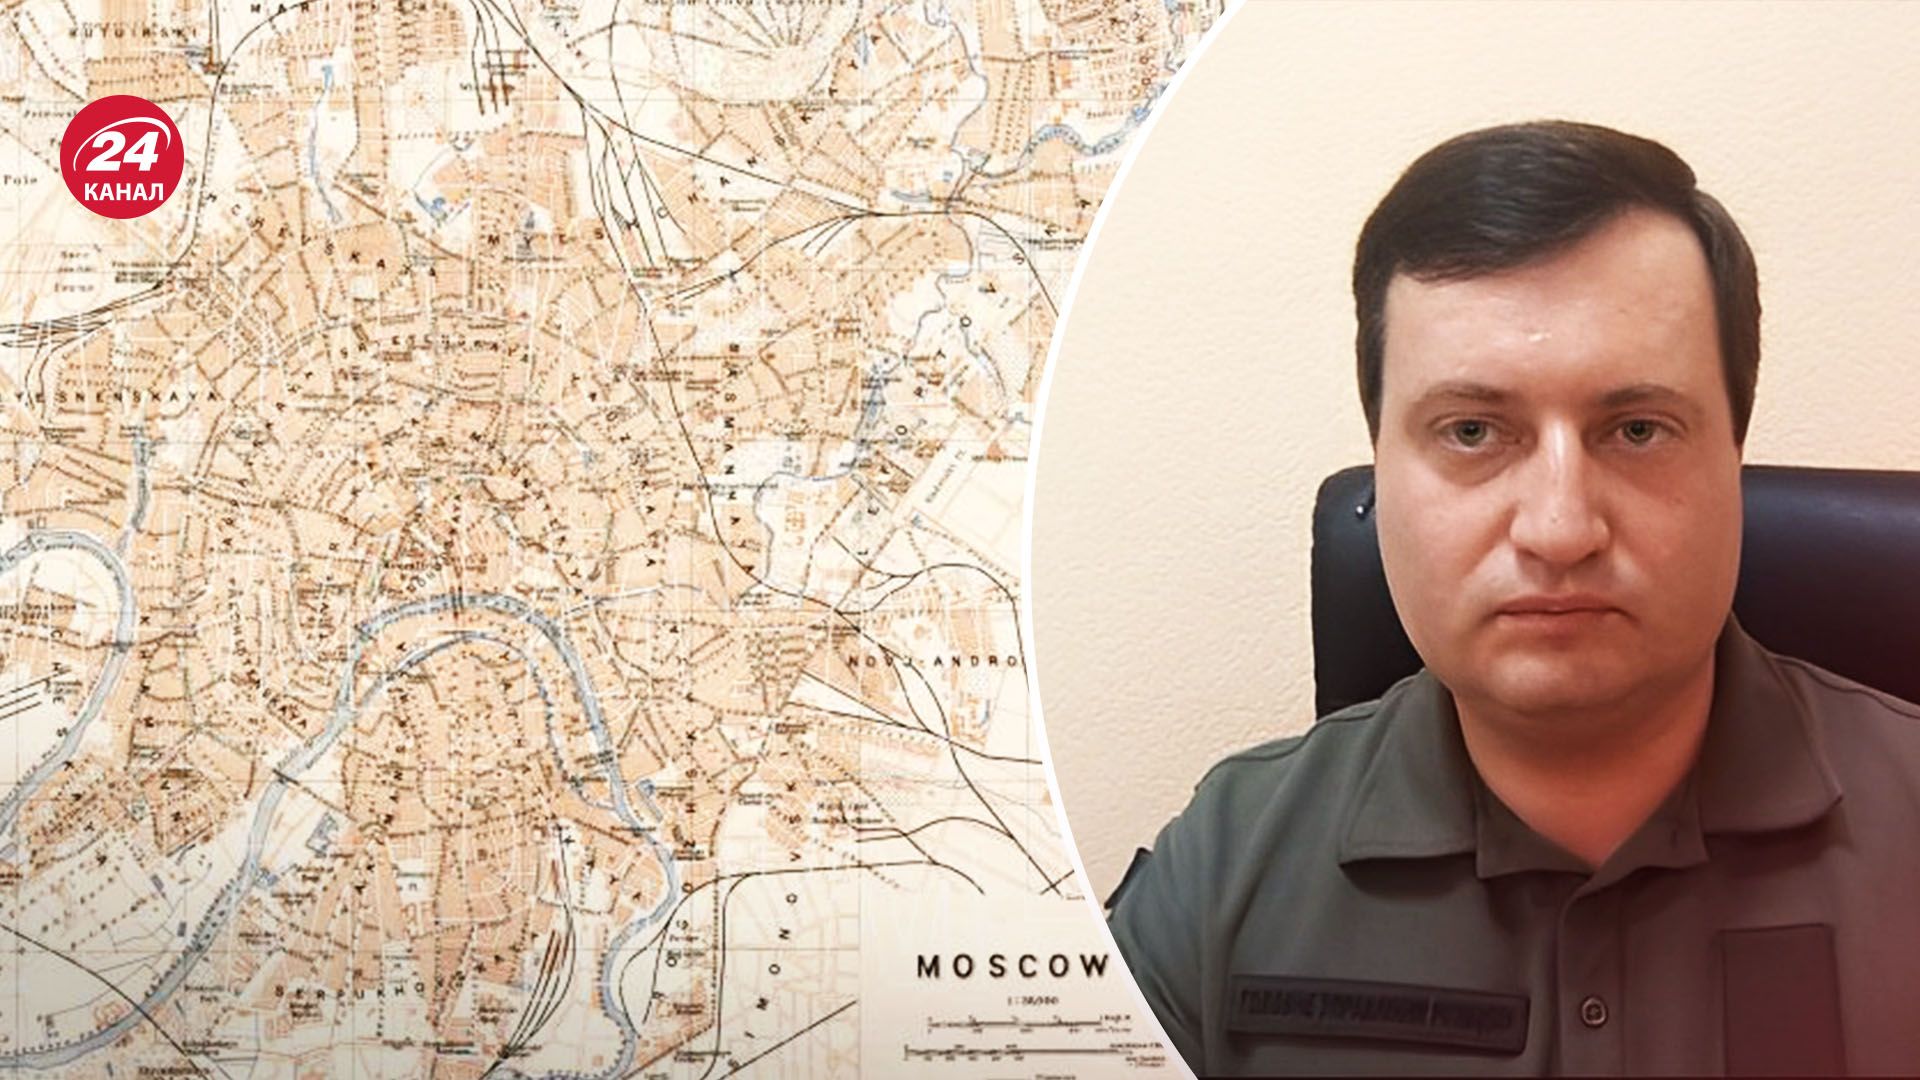 Журналисты нашли адреса режимных объектов в Москве - они уже были известны ГУР - 24 Канал